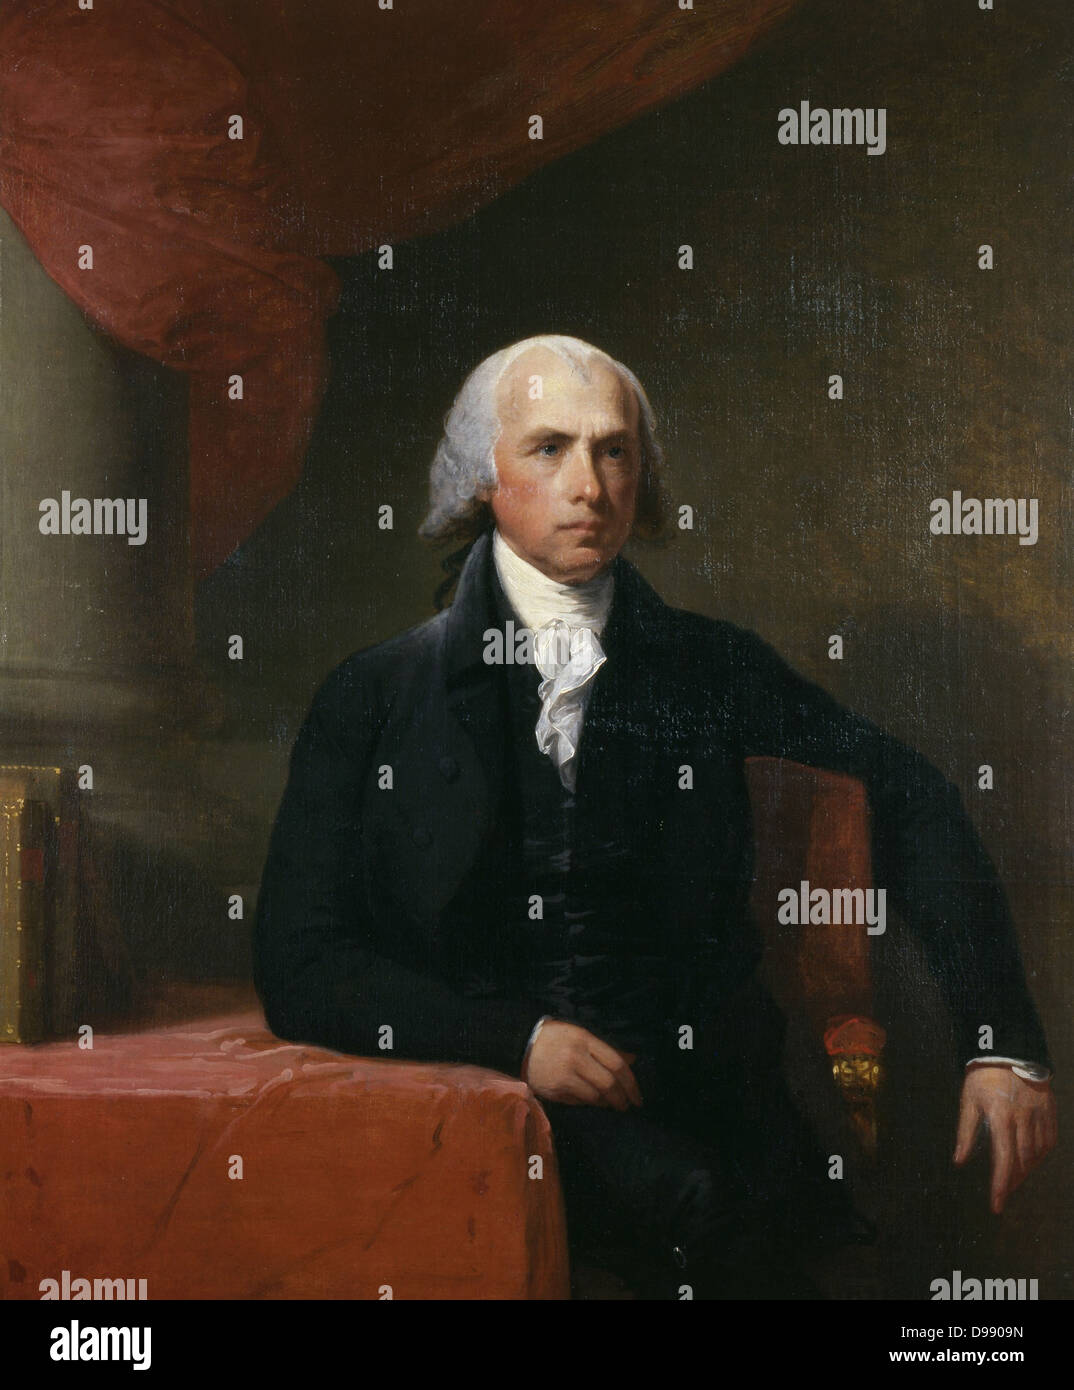 Portrait du président des États-Unis, James Madison.Huile sur toile peint par Gilbert Stuart (1755 -1828), qui a fait des copies supplémentaires après l'achèvement des travaux. Date c. 1805-07 Banque D'Images